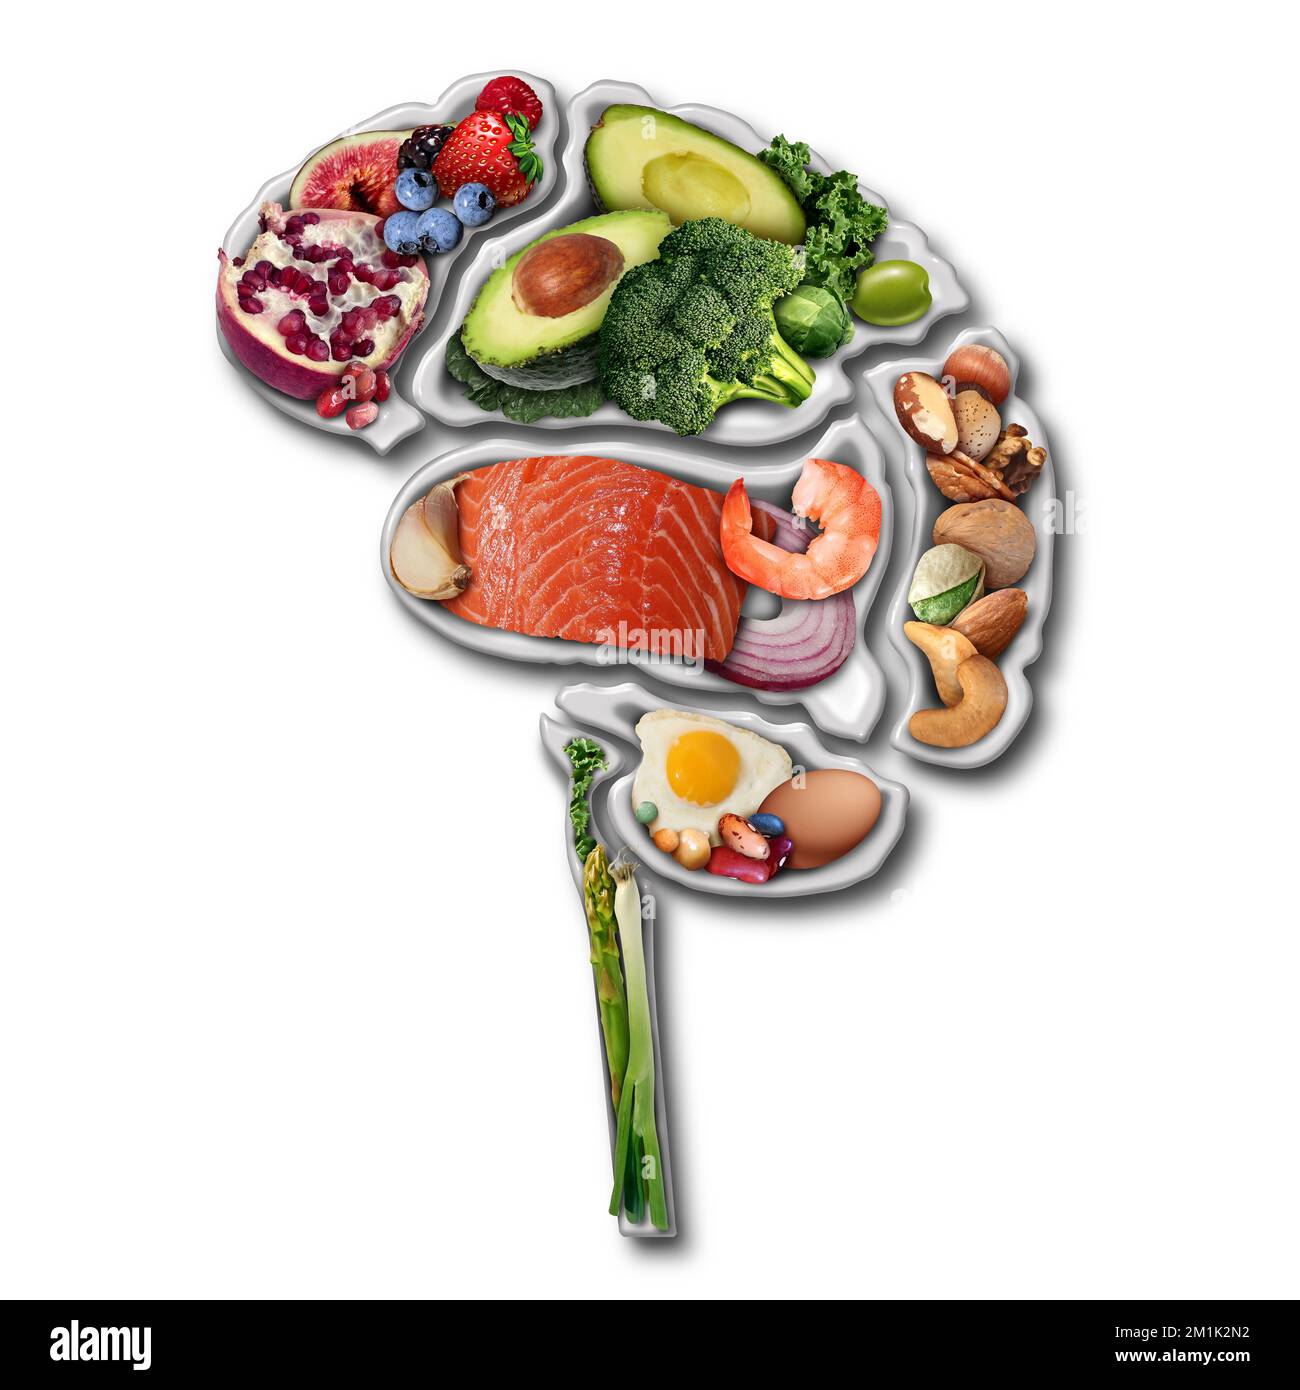 Alimentation de puissance de cerveau pour stimuler la nutrition de puissance de cerveau concept comme un groupe de fruits à coque nourrissants légumes et baies de poisson riches en acides gras oméga-3 Banque D'Images